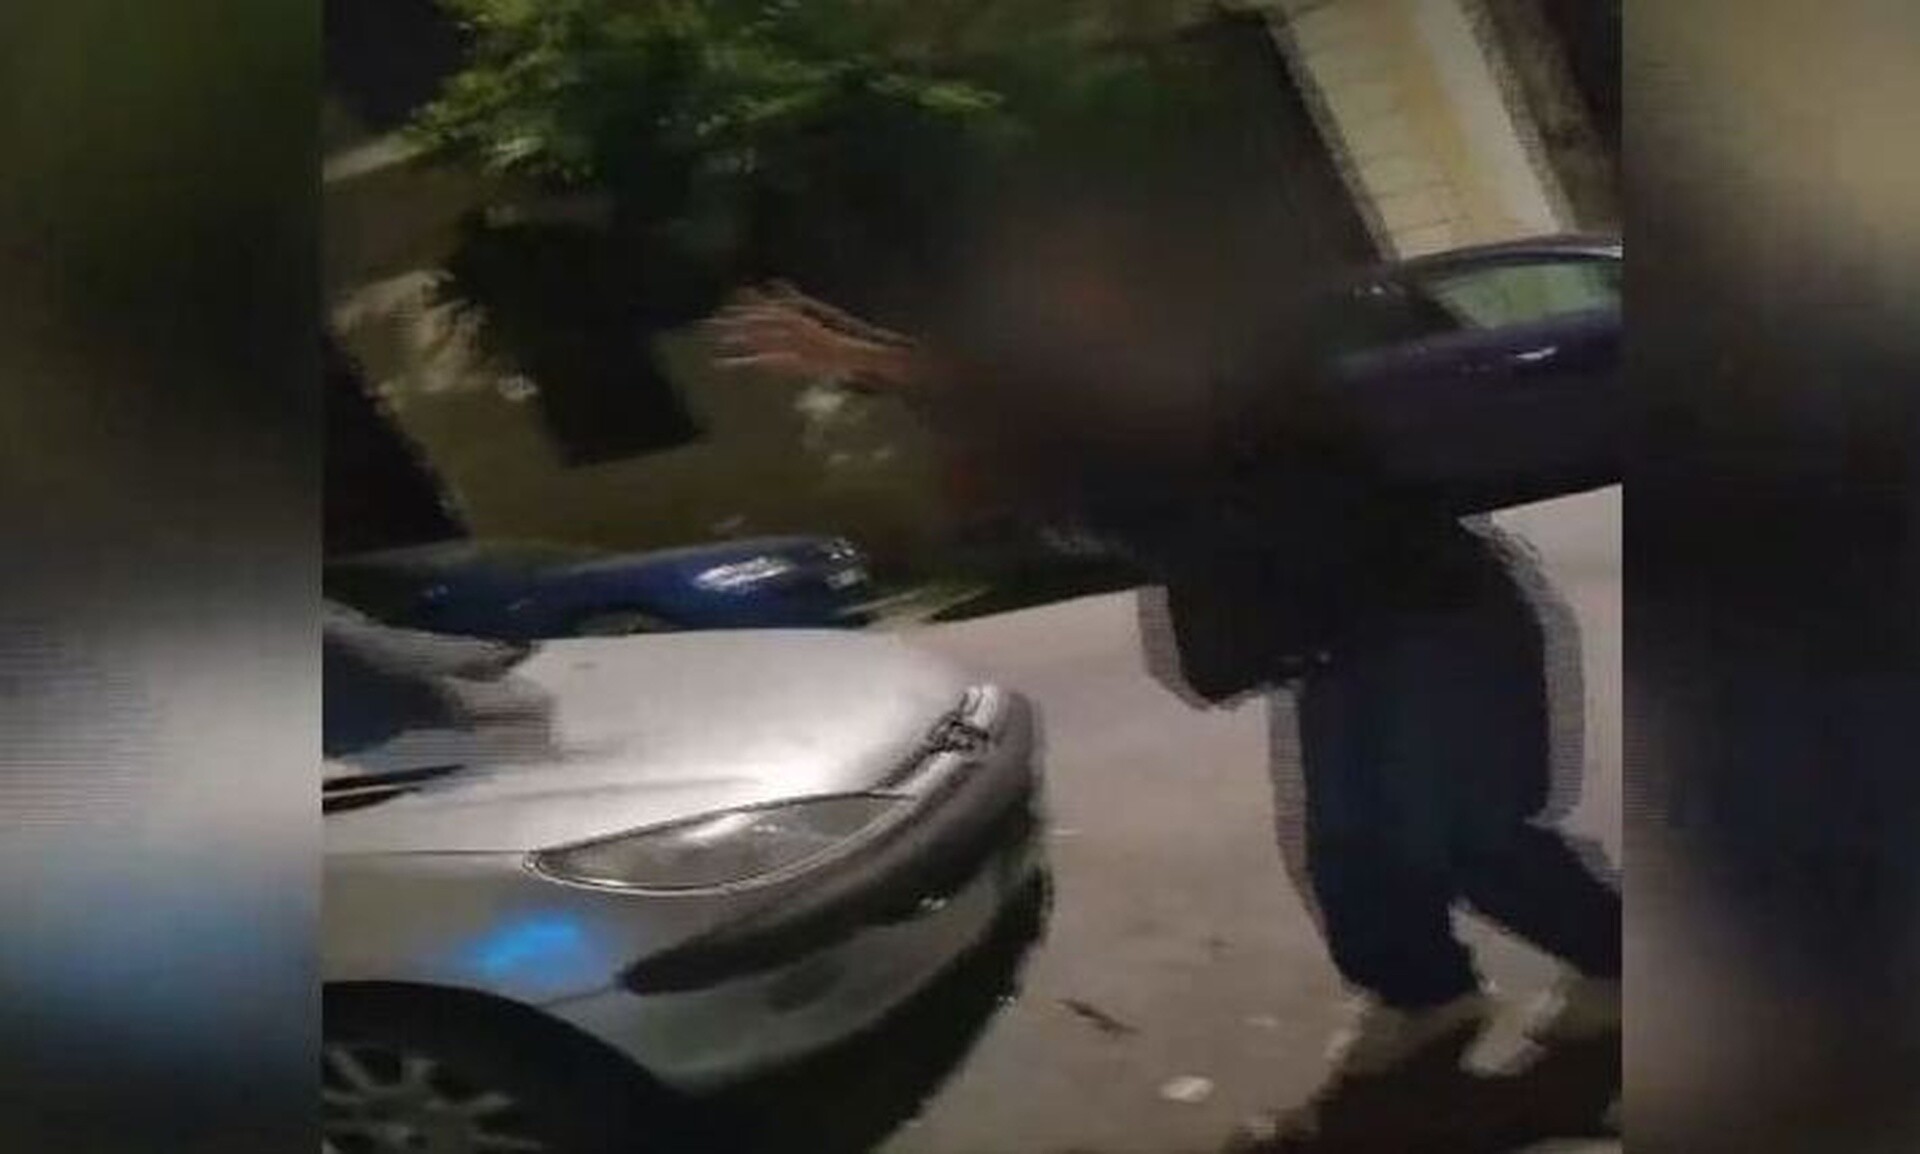 Πάτρα: Γυναίκα πήδηξε από το παράθυρο - Δικάζεται ξανά ο σύντροφός της